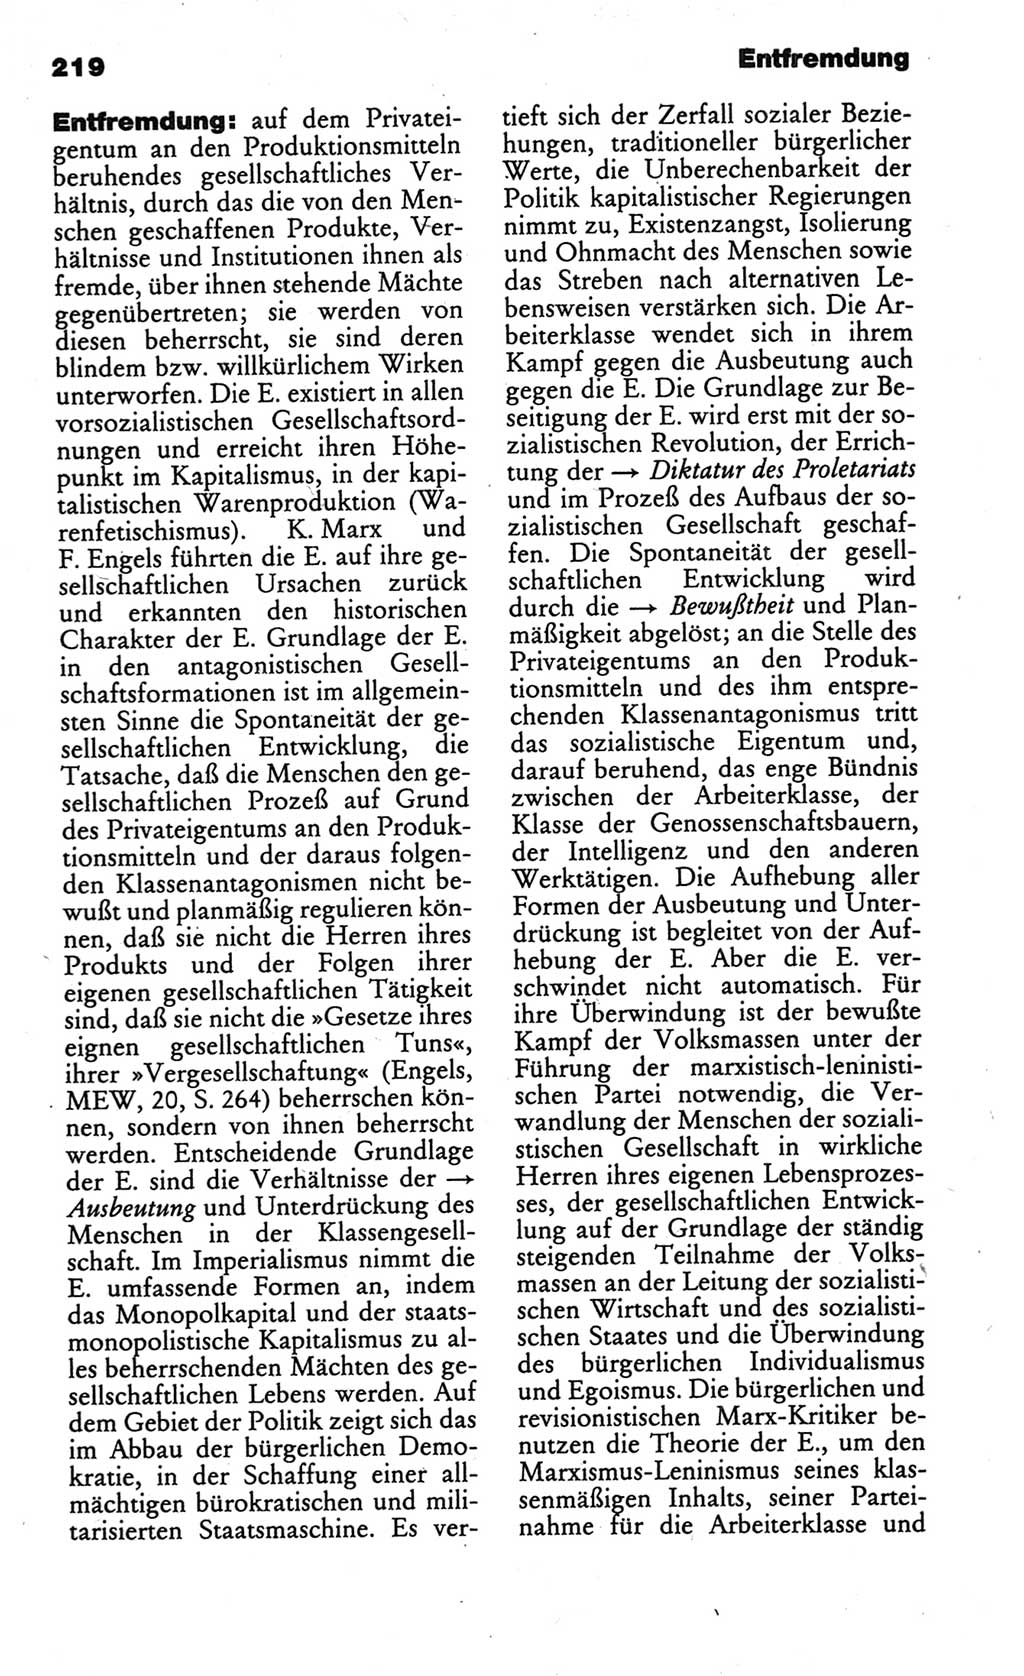 Kleines politisches Wörterbuch [Deutsche Demokratische Republik (DDR)] 1986, Seite 219 (Kl. pol. Wb. DDR 1986, S. 219)